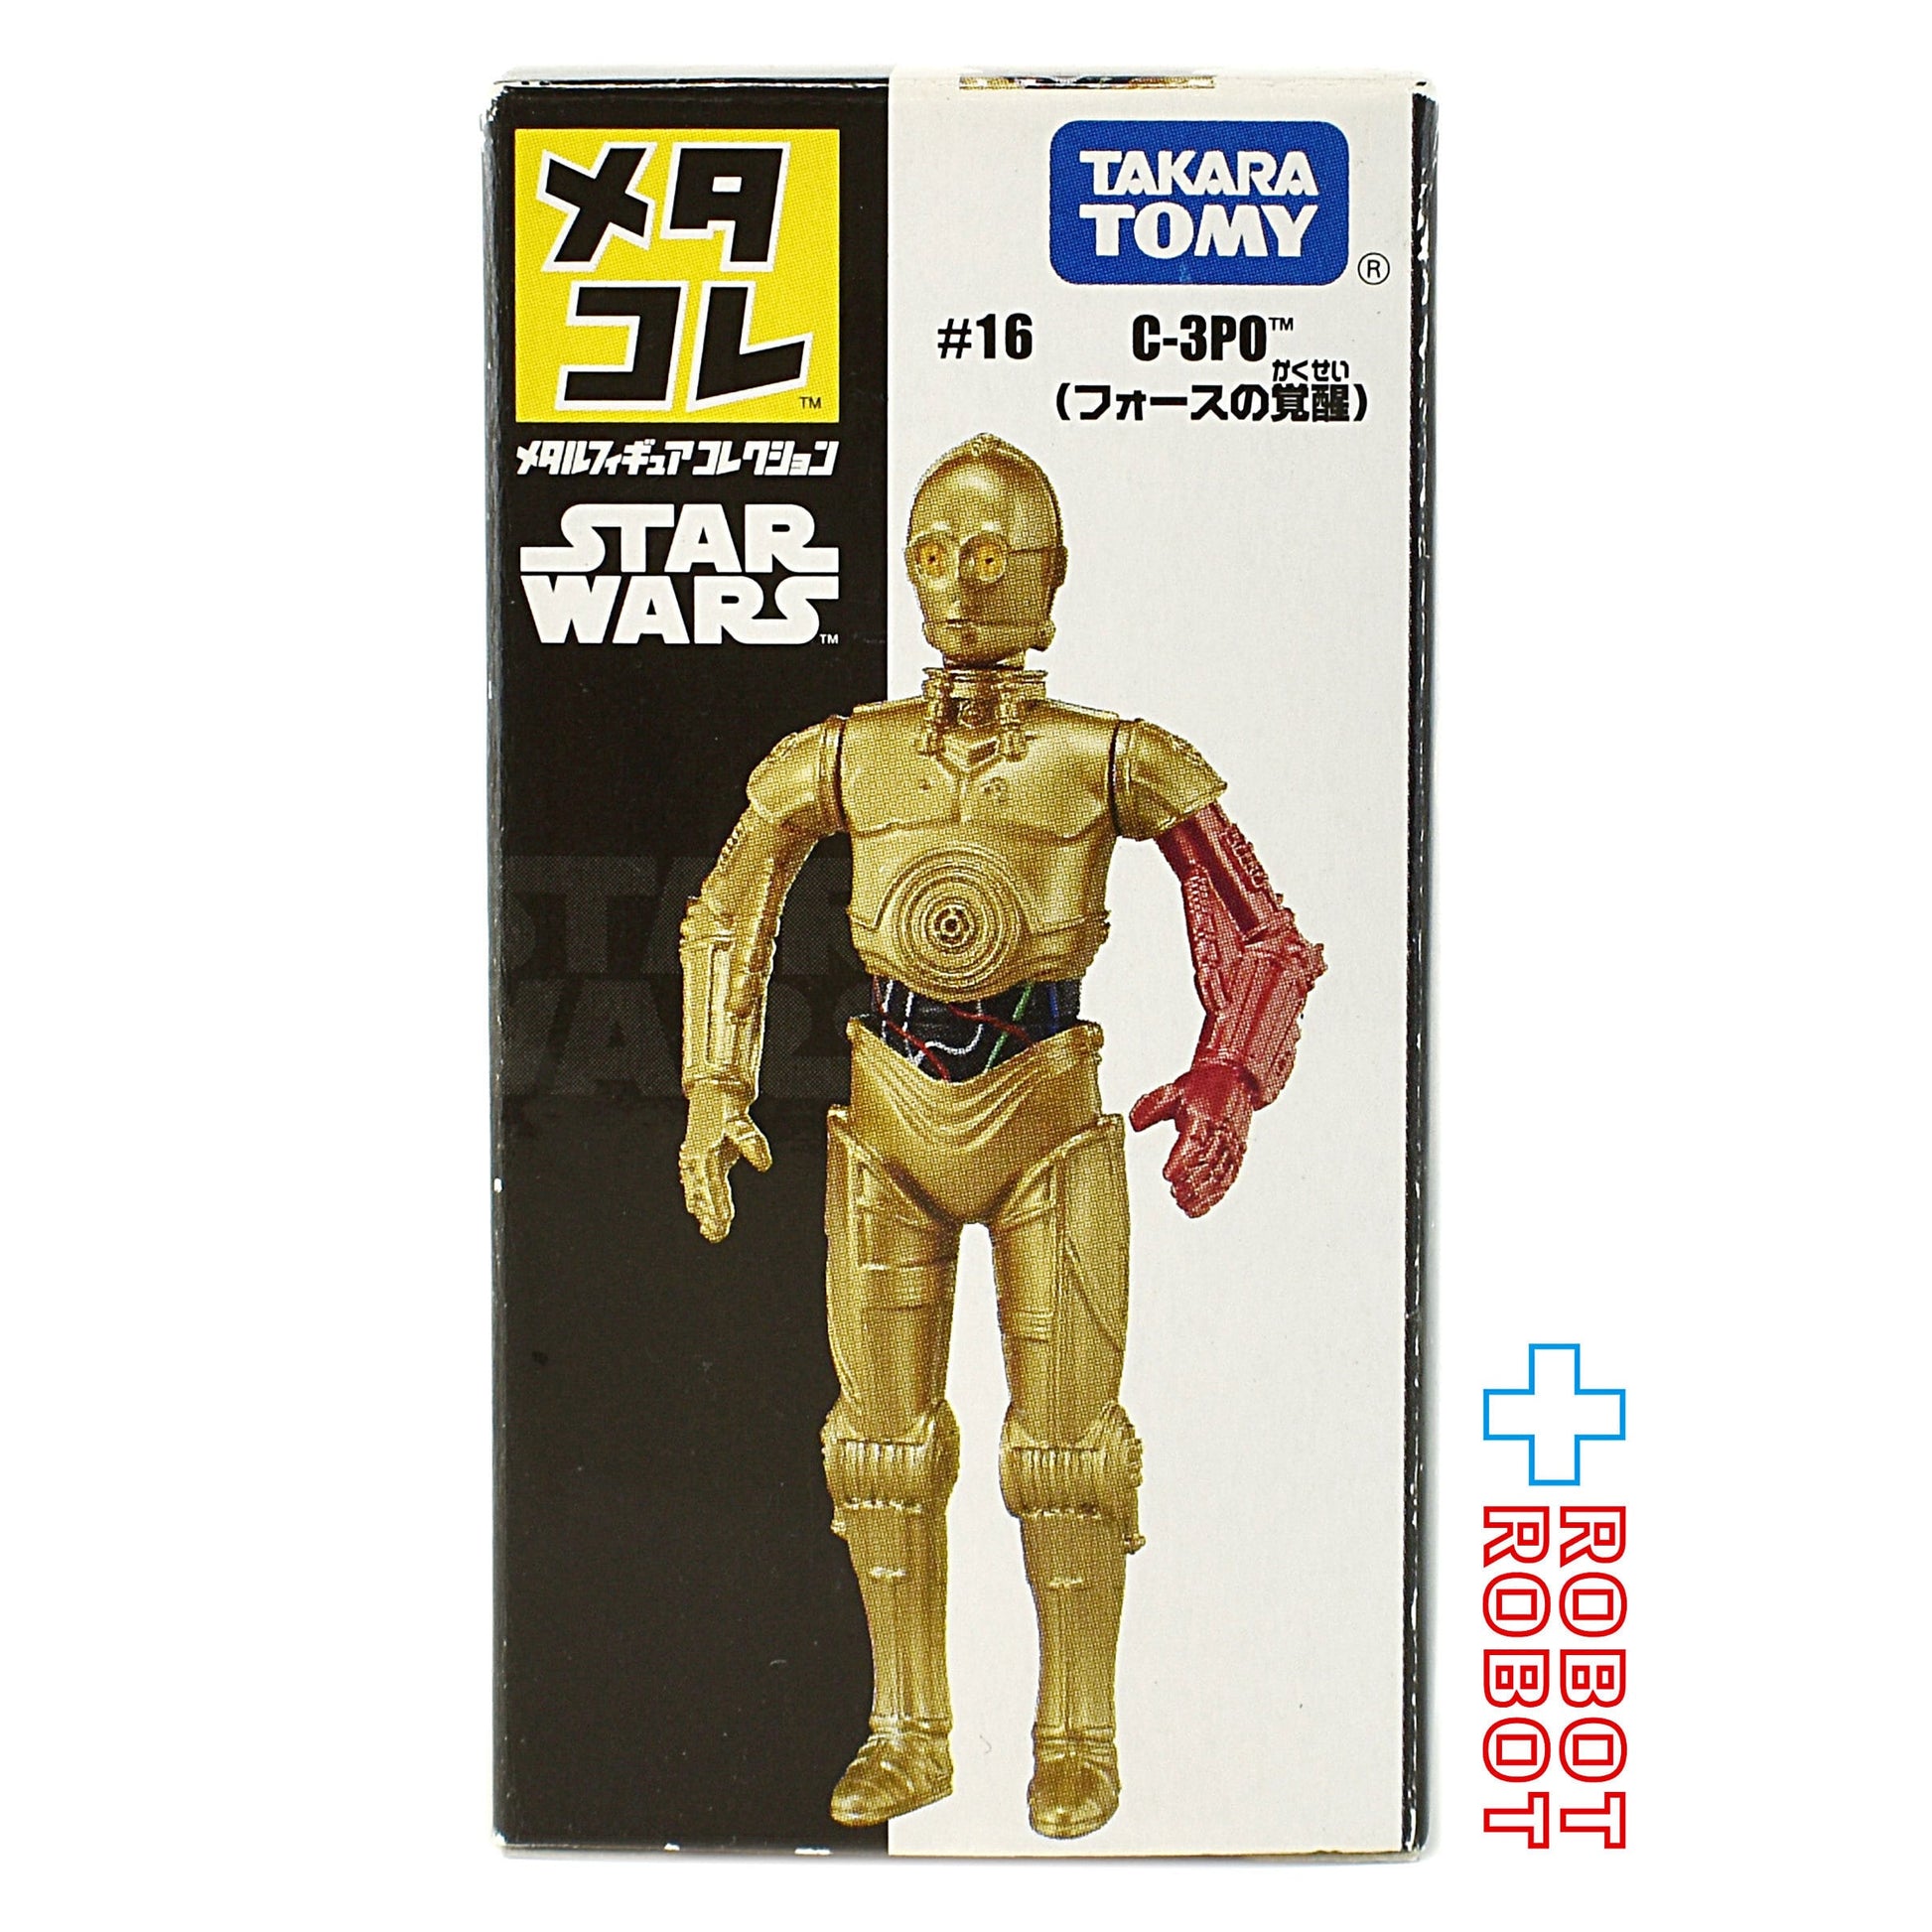 タカラトミー スター・ウォーズ メタコレ #16 C-3PO (フォースの覚醒) メタルフィギュア 開封箱付